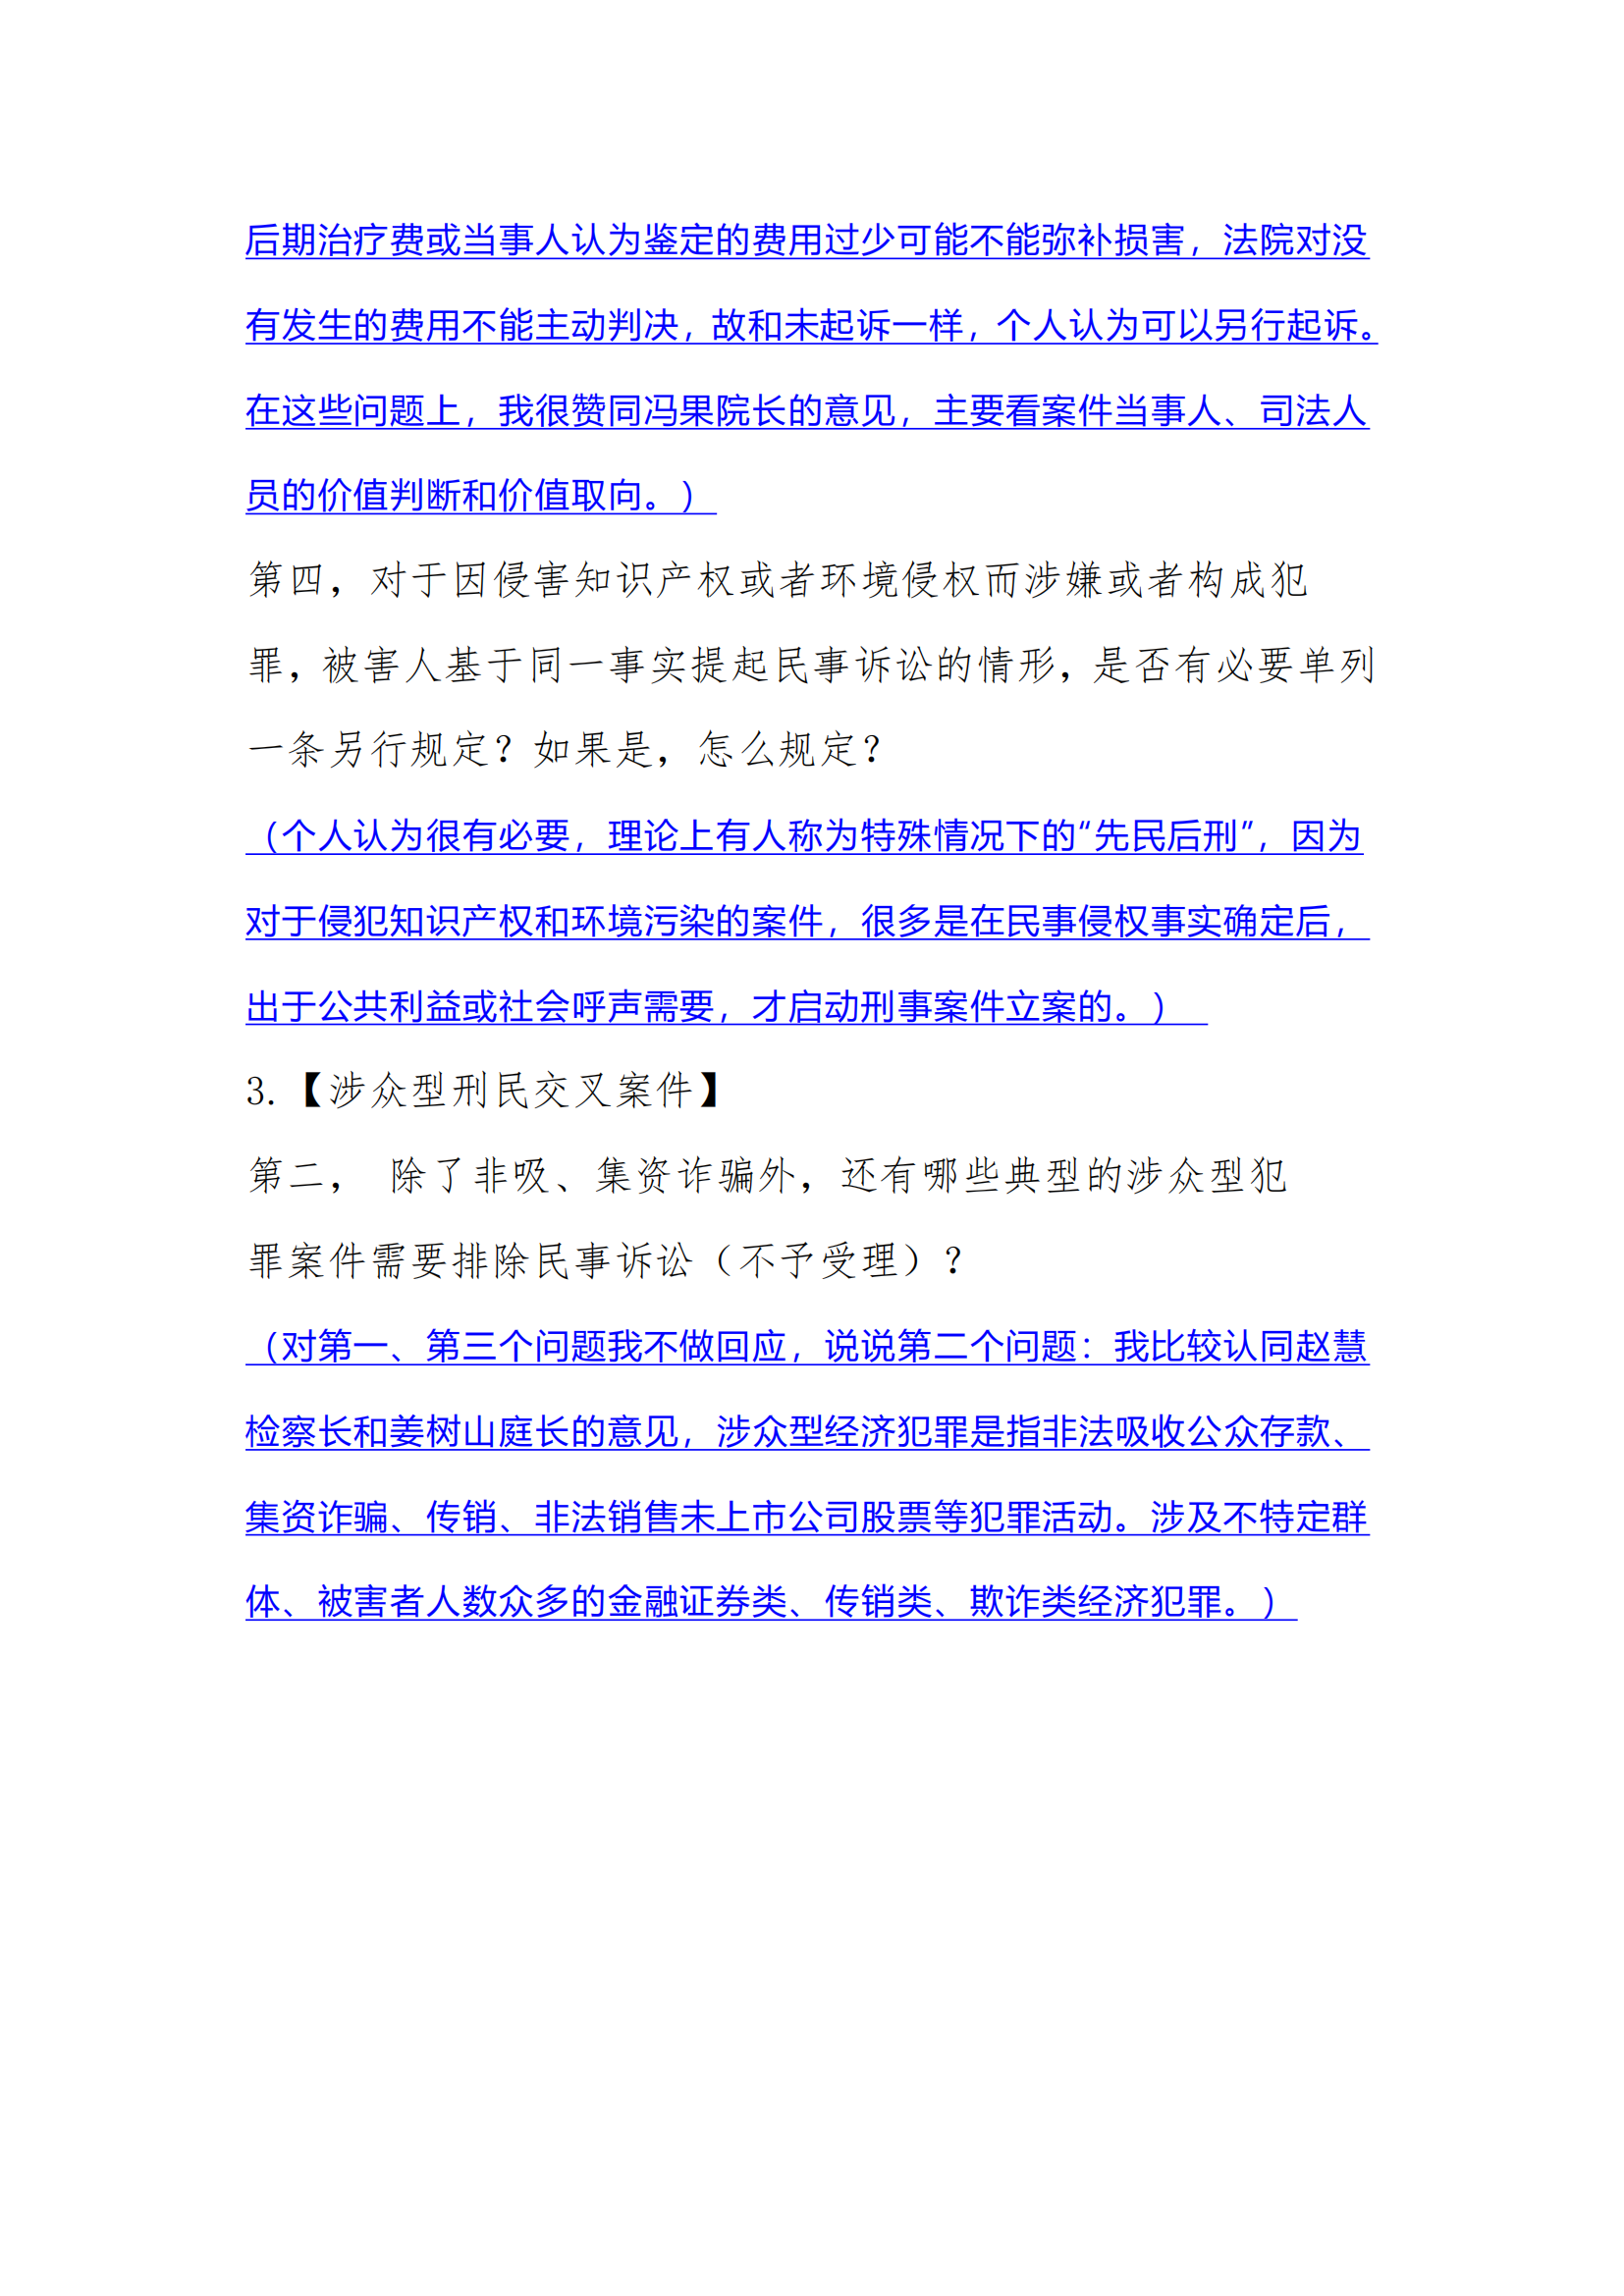 武汉大学司法案例研究中心实务疑难问题研习沙龙.docx（立丰汪群）(1)_02.png